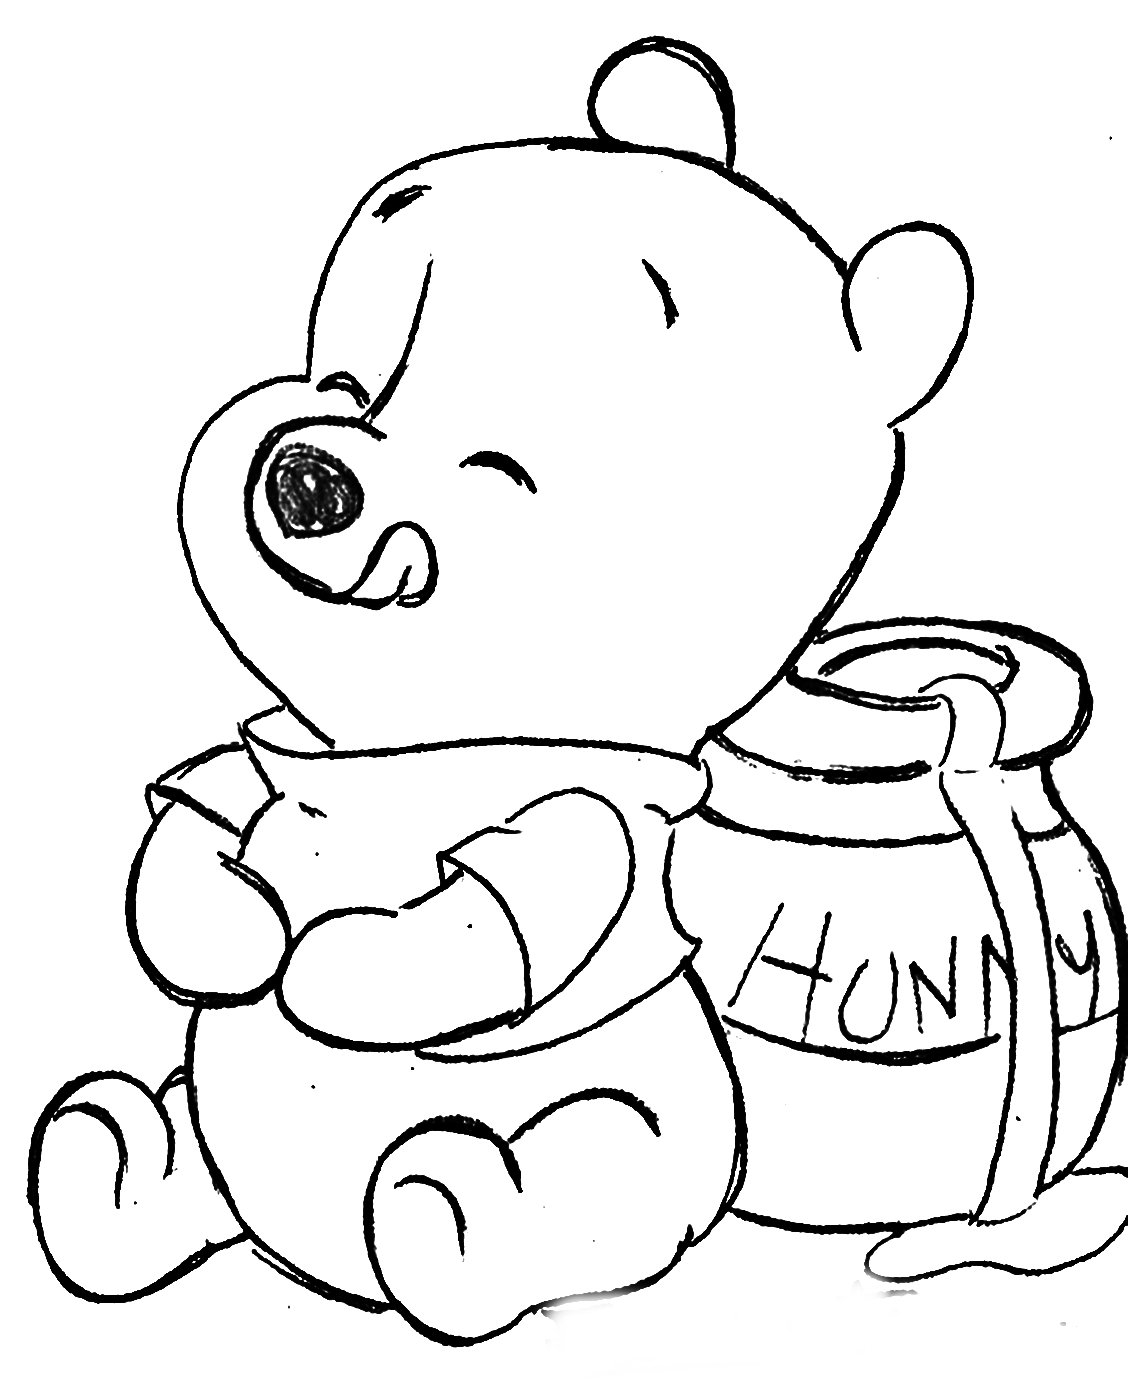 Раскраски из мультфильма Винни Пух (Winnie the Pooh) скачать